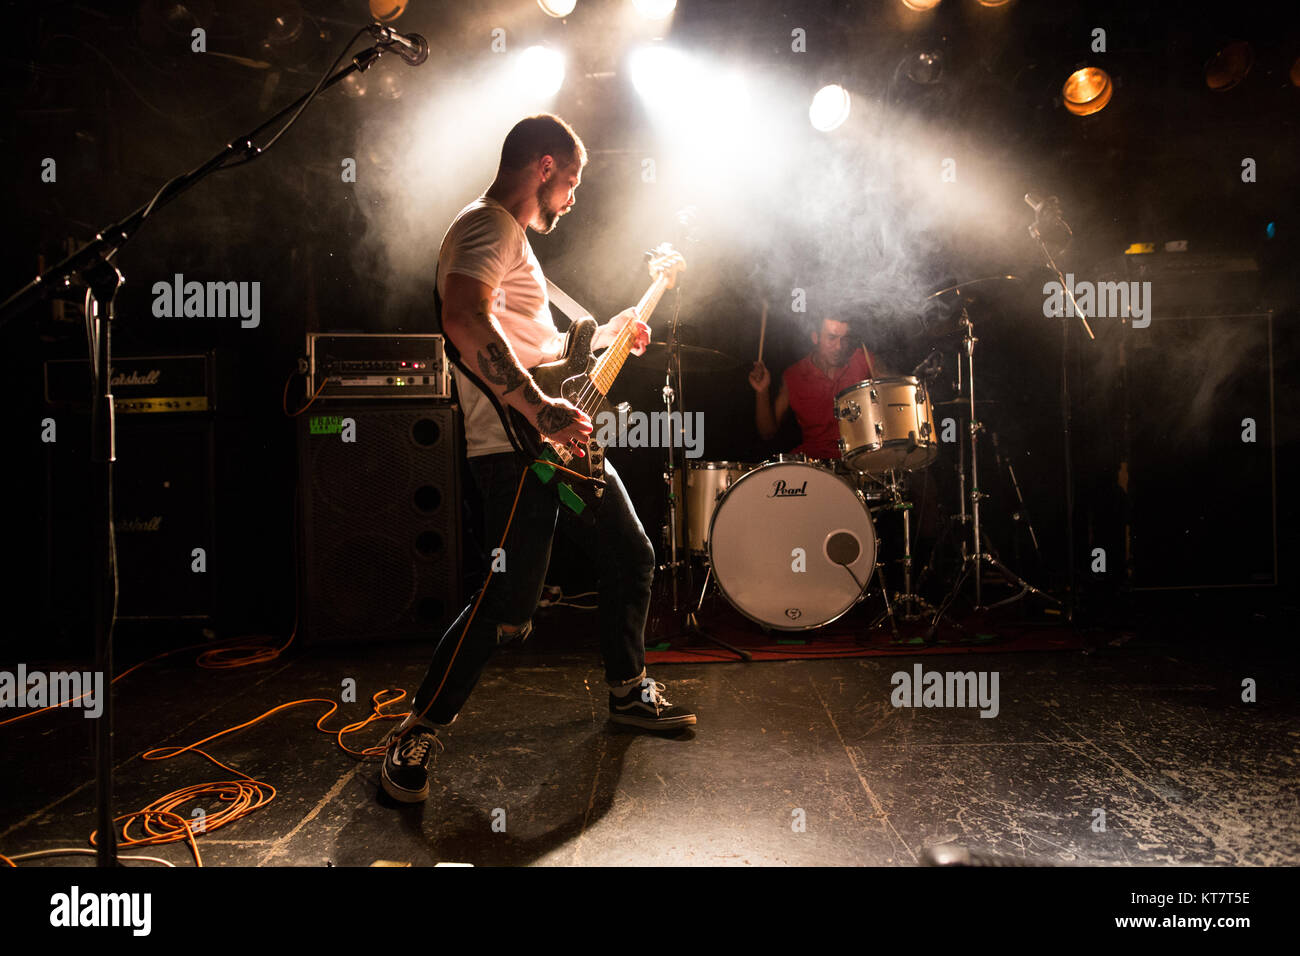 Die britische Punkband Jugend Mann führt ein Live Konzert von John Dee in Oslo. Hier Bass Player Meilen Cocker ist live auf der Bühne gesehen. Norwegen, 14.03.2017. Stockfoto